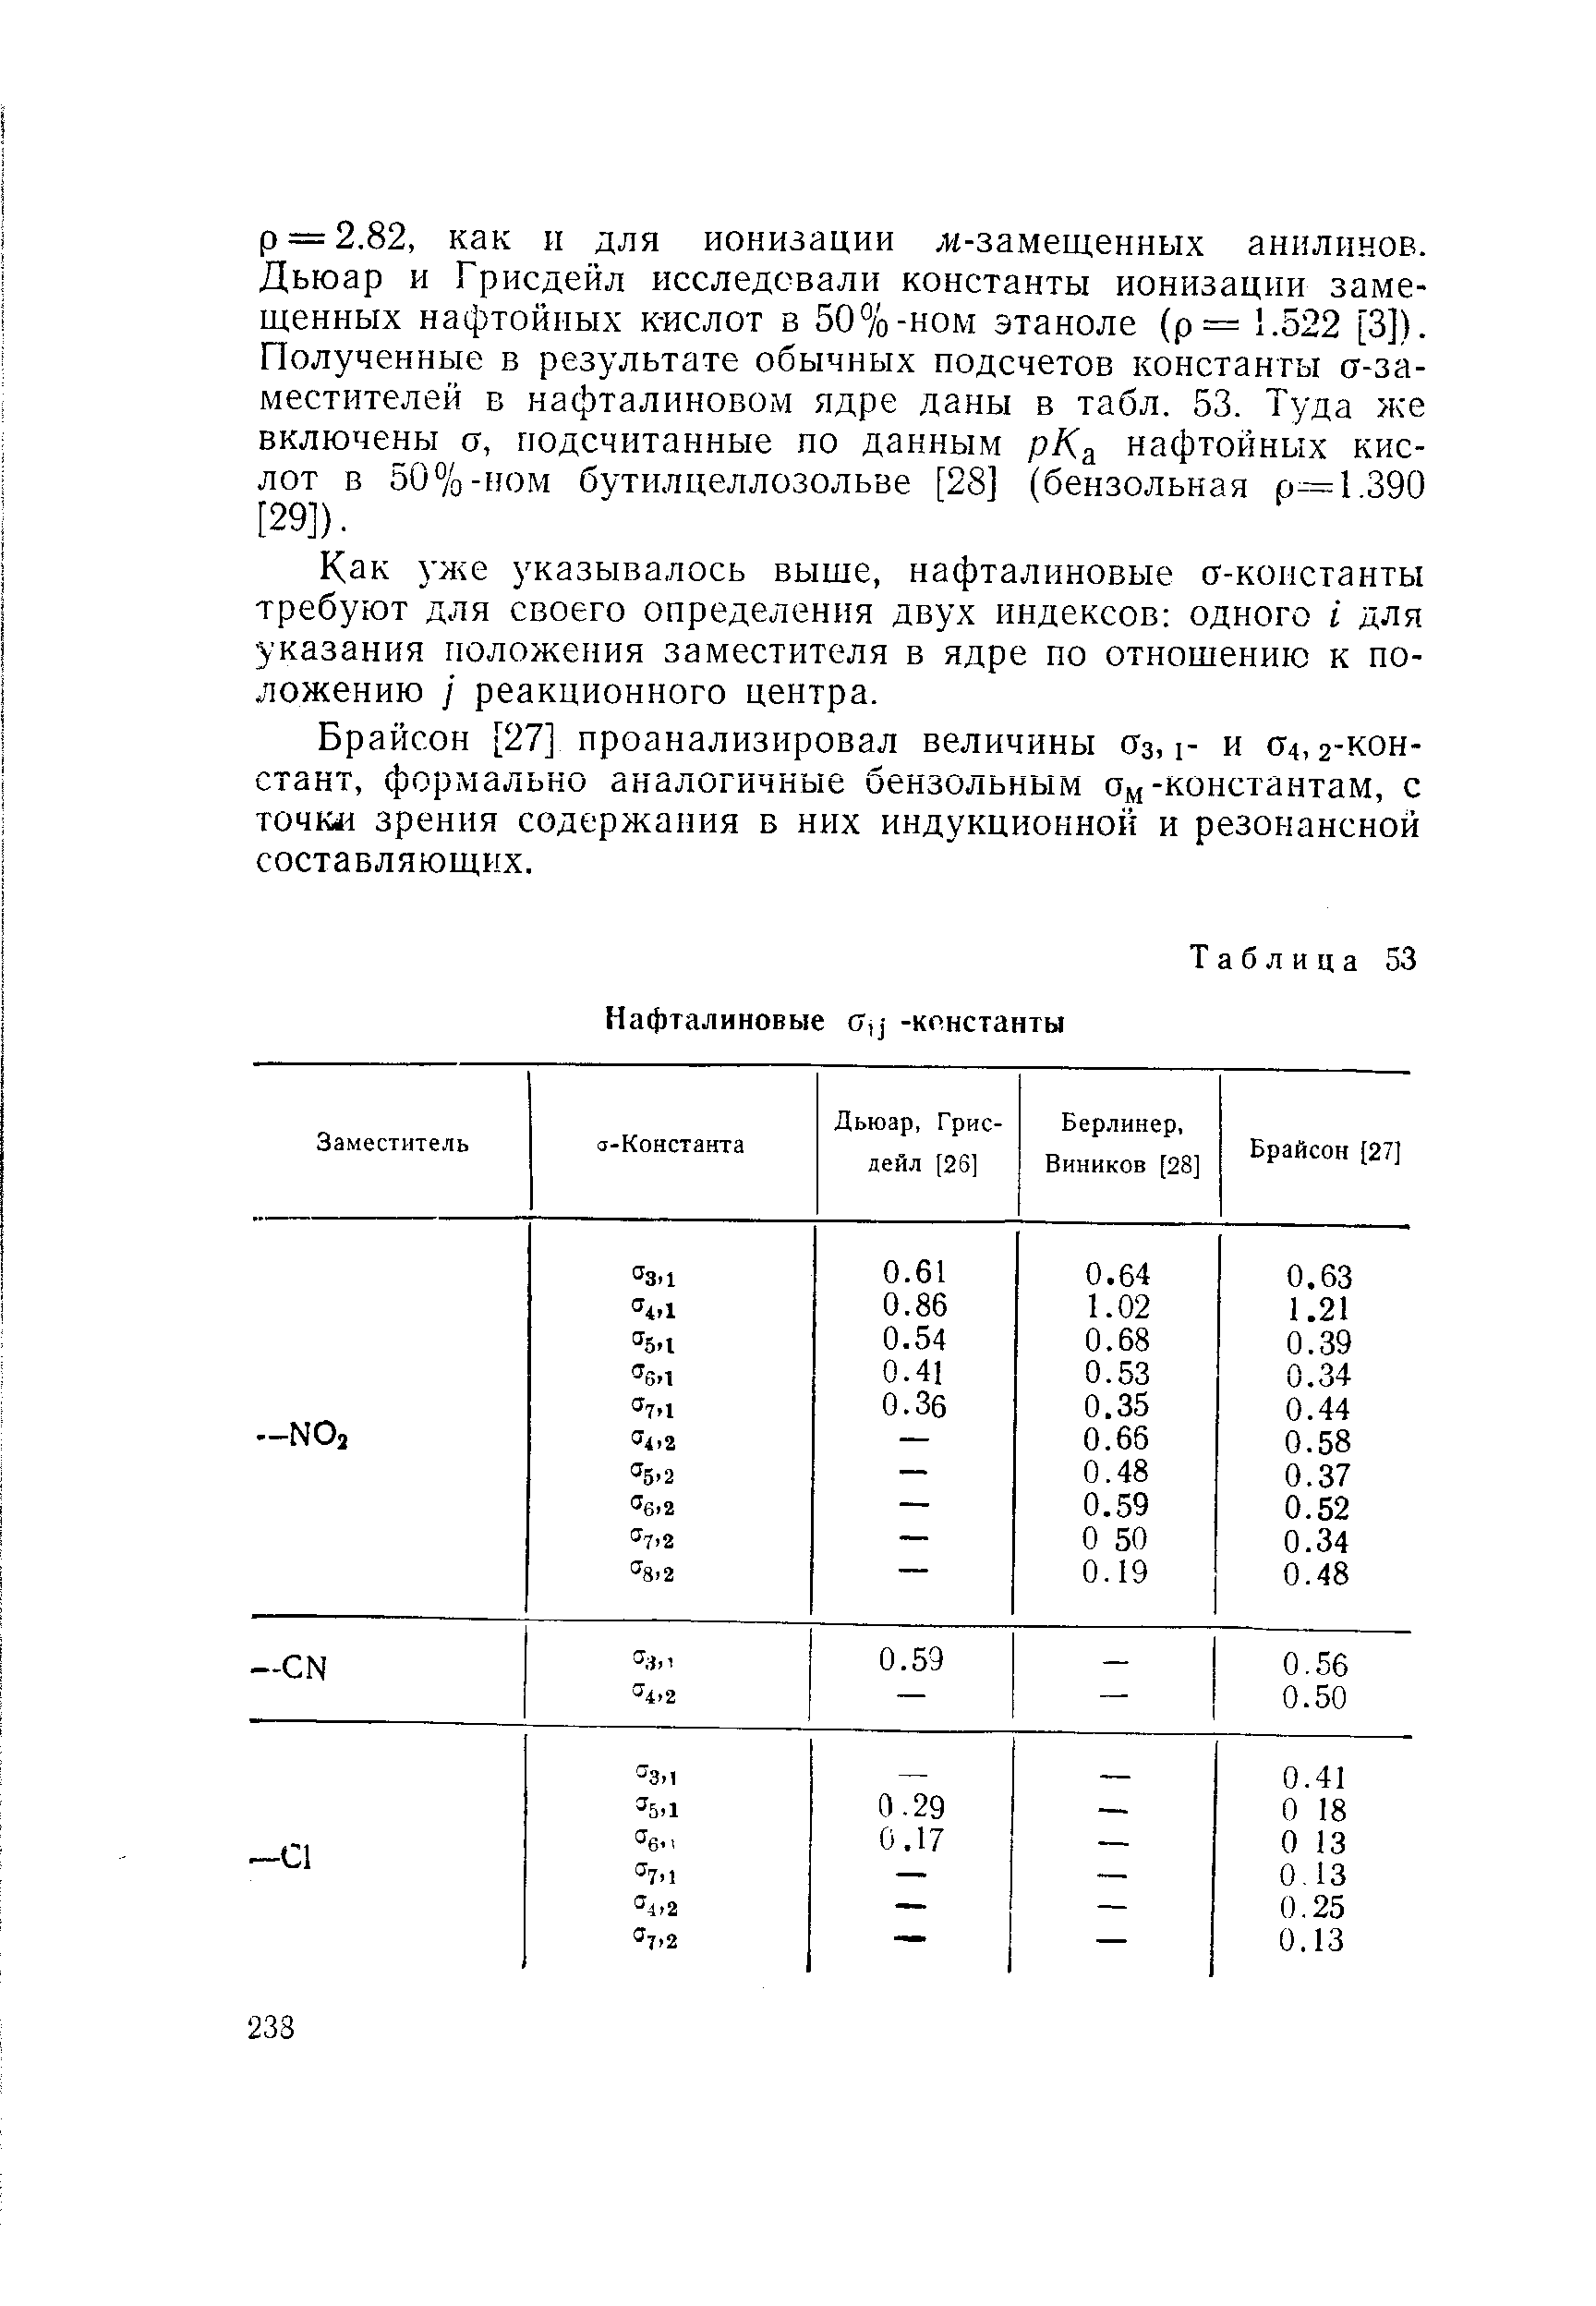 Как 3 же указывалось выше, нафталиновые а-константы требуют для своего определения двух индексов одного I для указания положения заместителя в ядре по отношению к положению / реакционного центра.